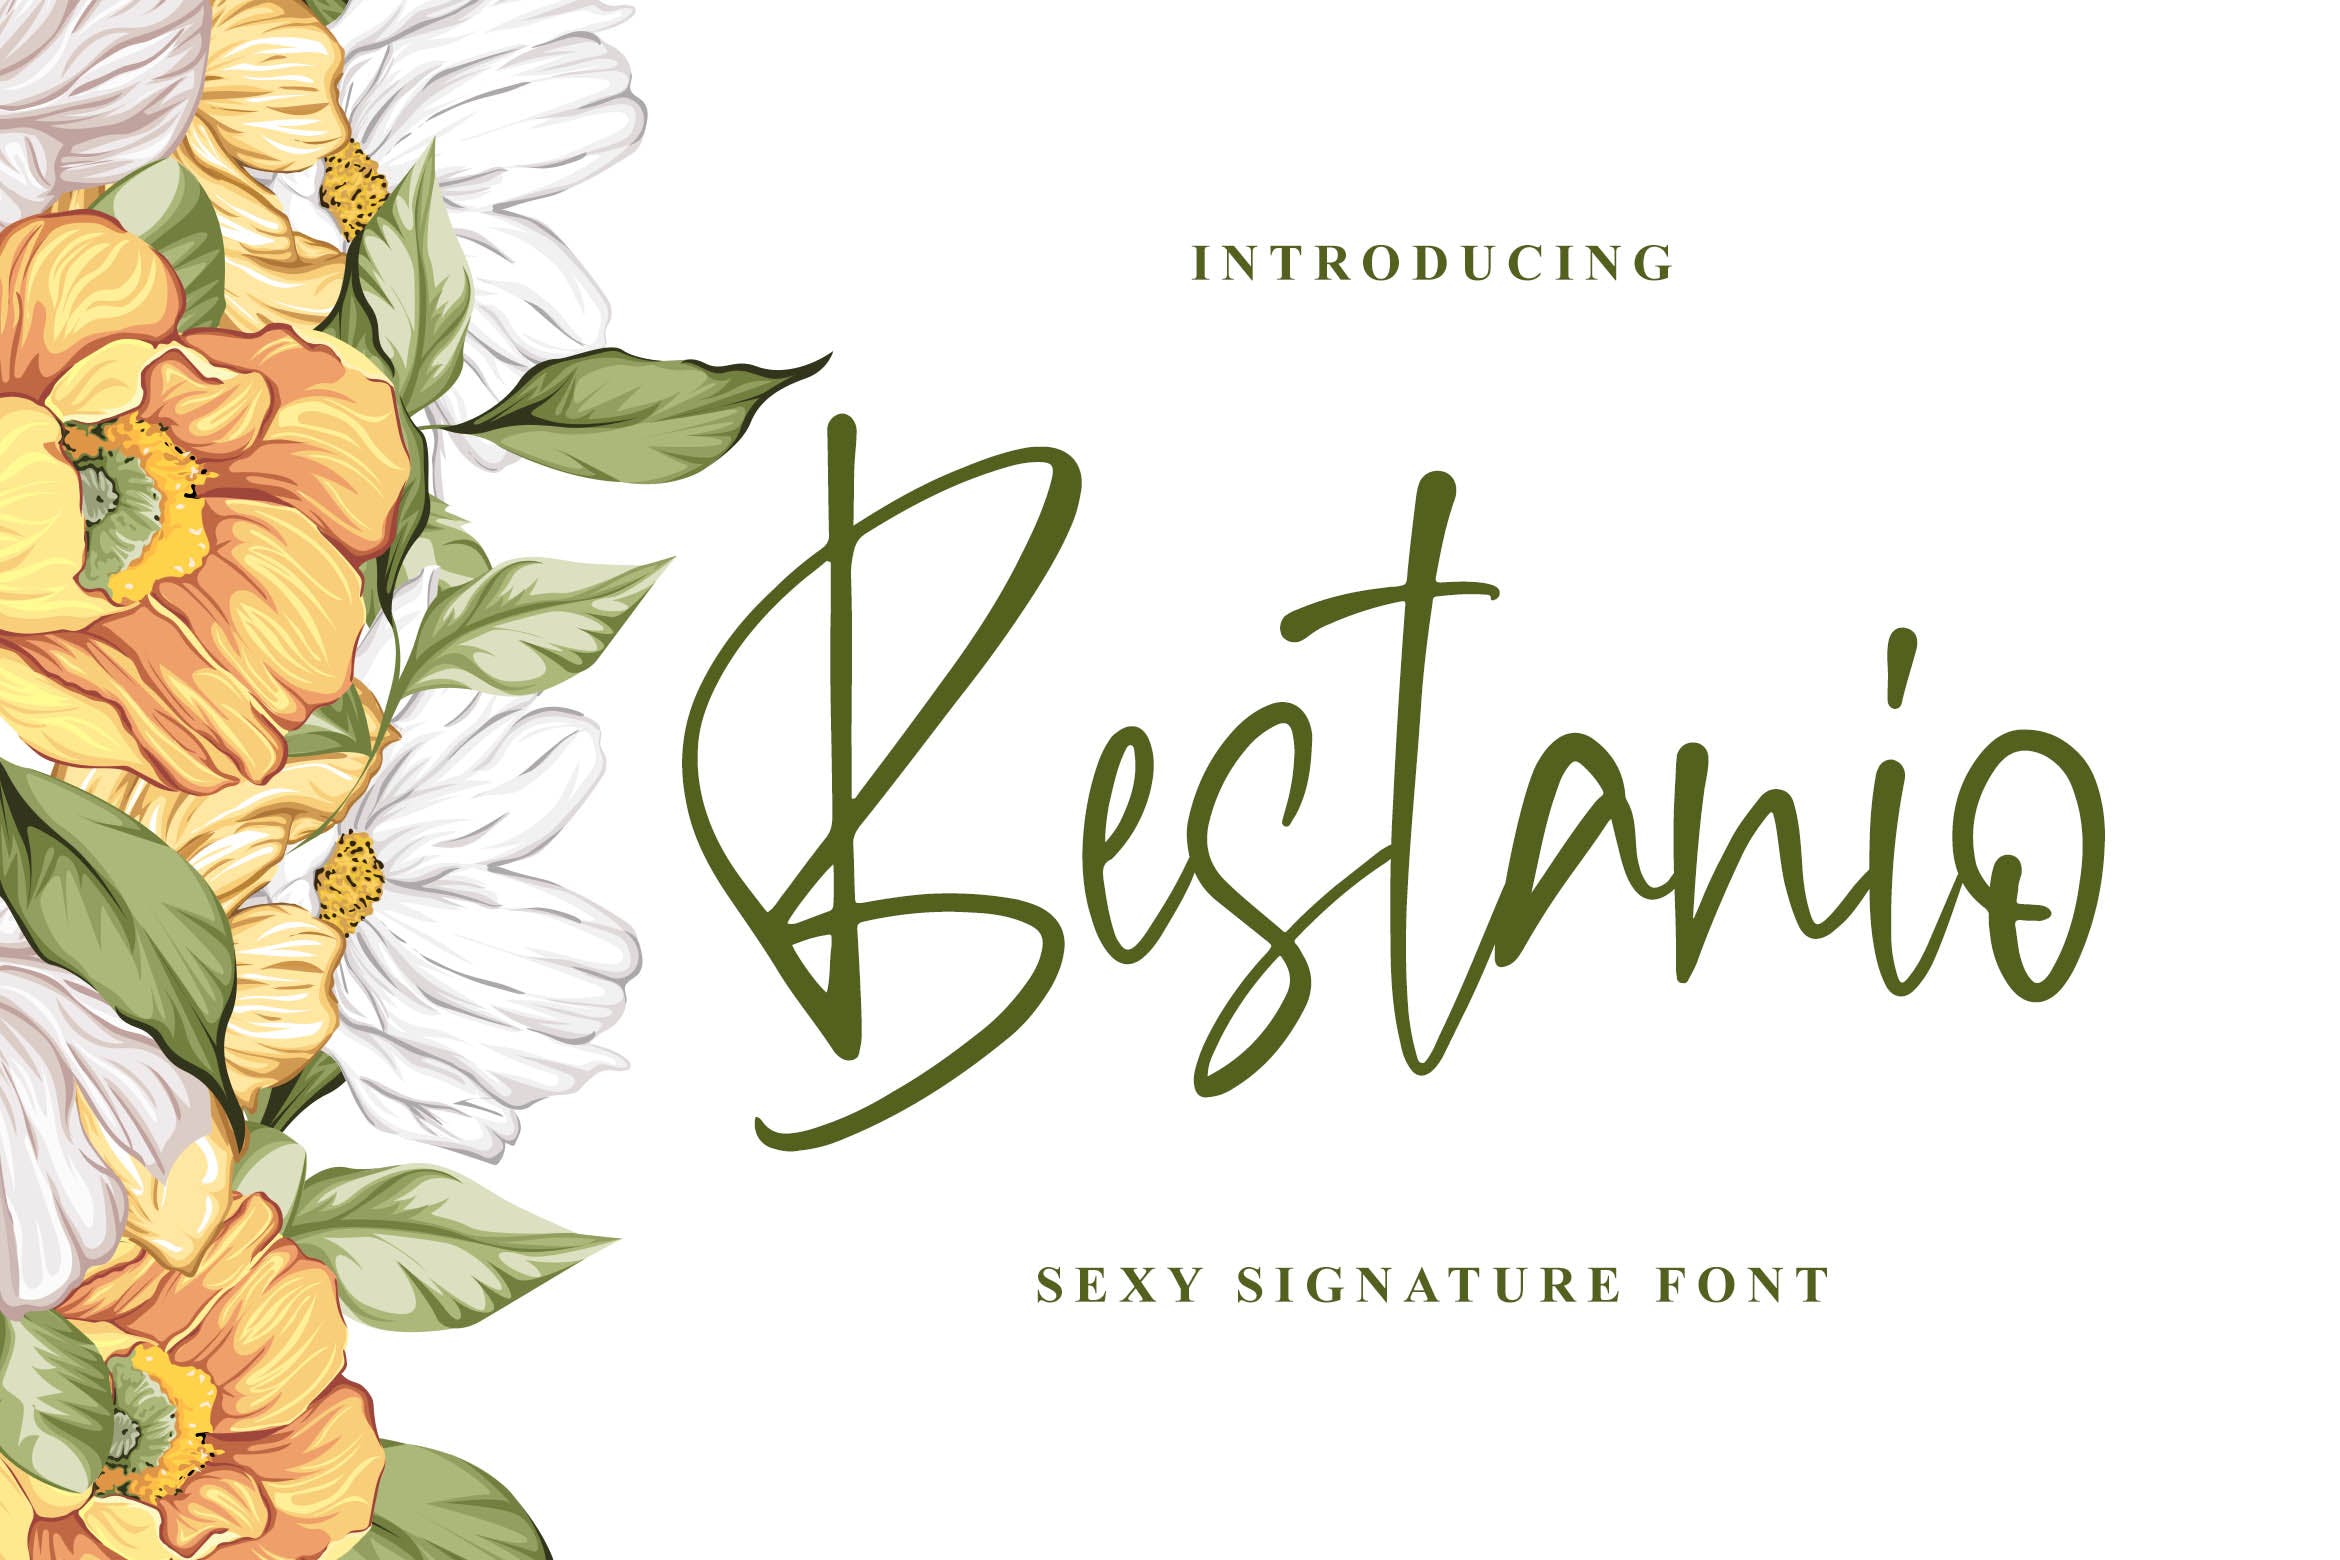 性感时尚英文签名字体16图库精选 Bestanio – Sexy Signature Font插图